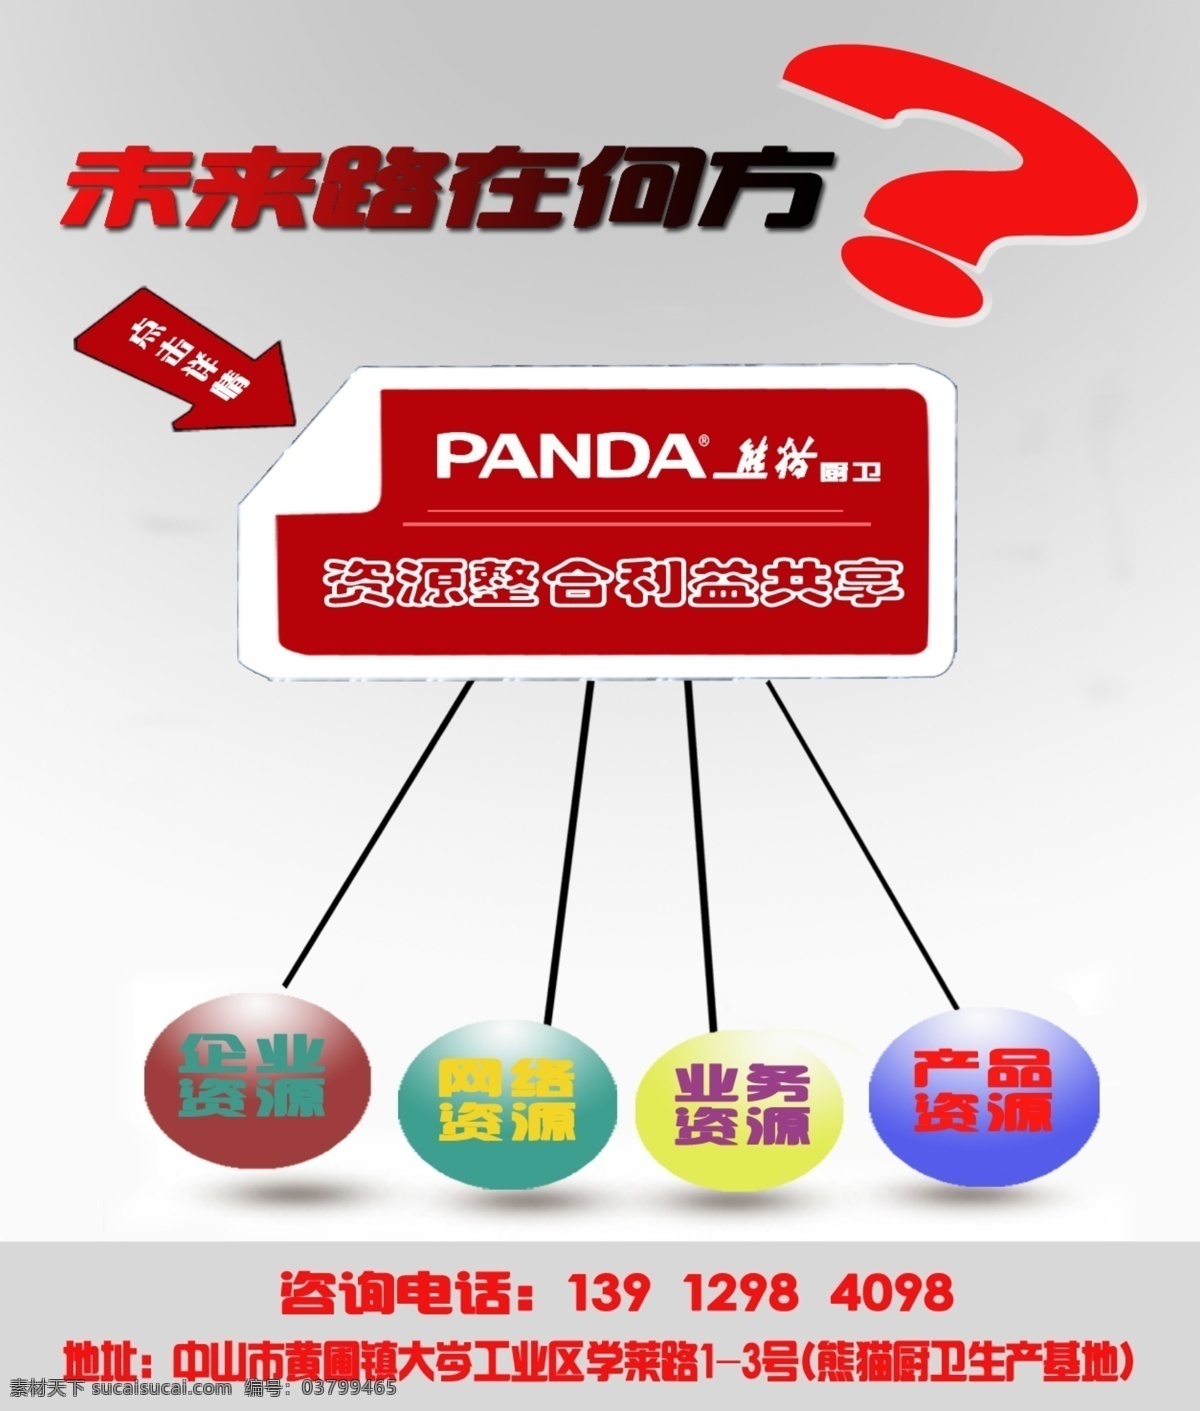 熊猫 厨房电器 资源共享 厨卫电器 招贴设计 熊猫厨卫 熊猫电器 厨卫品牌 海报 其他海报设计